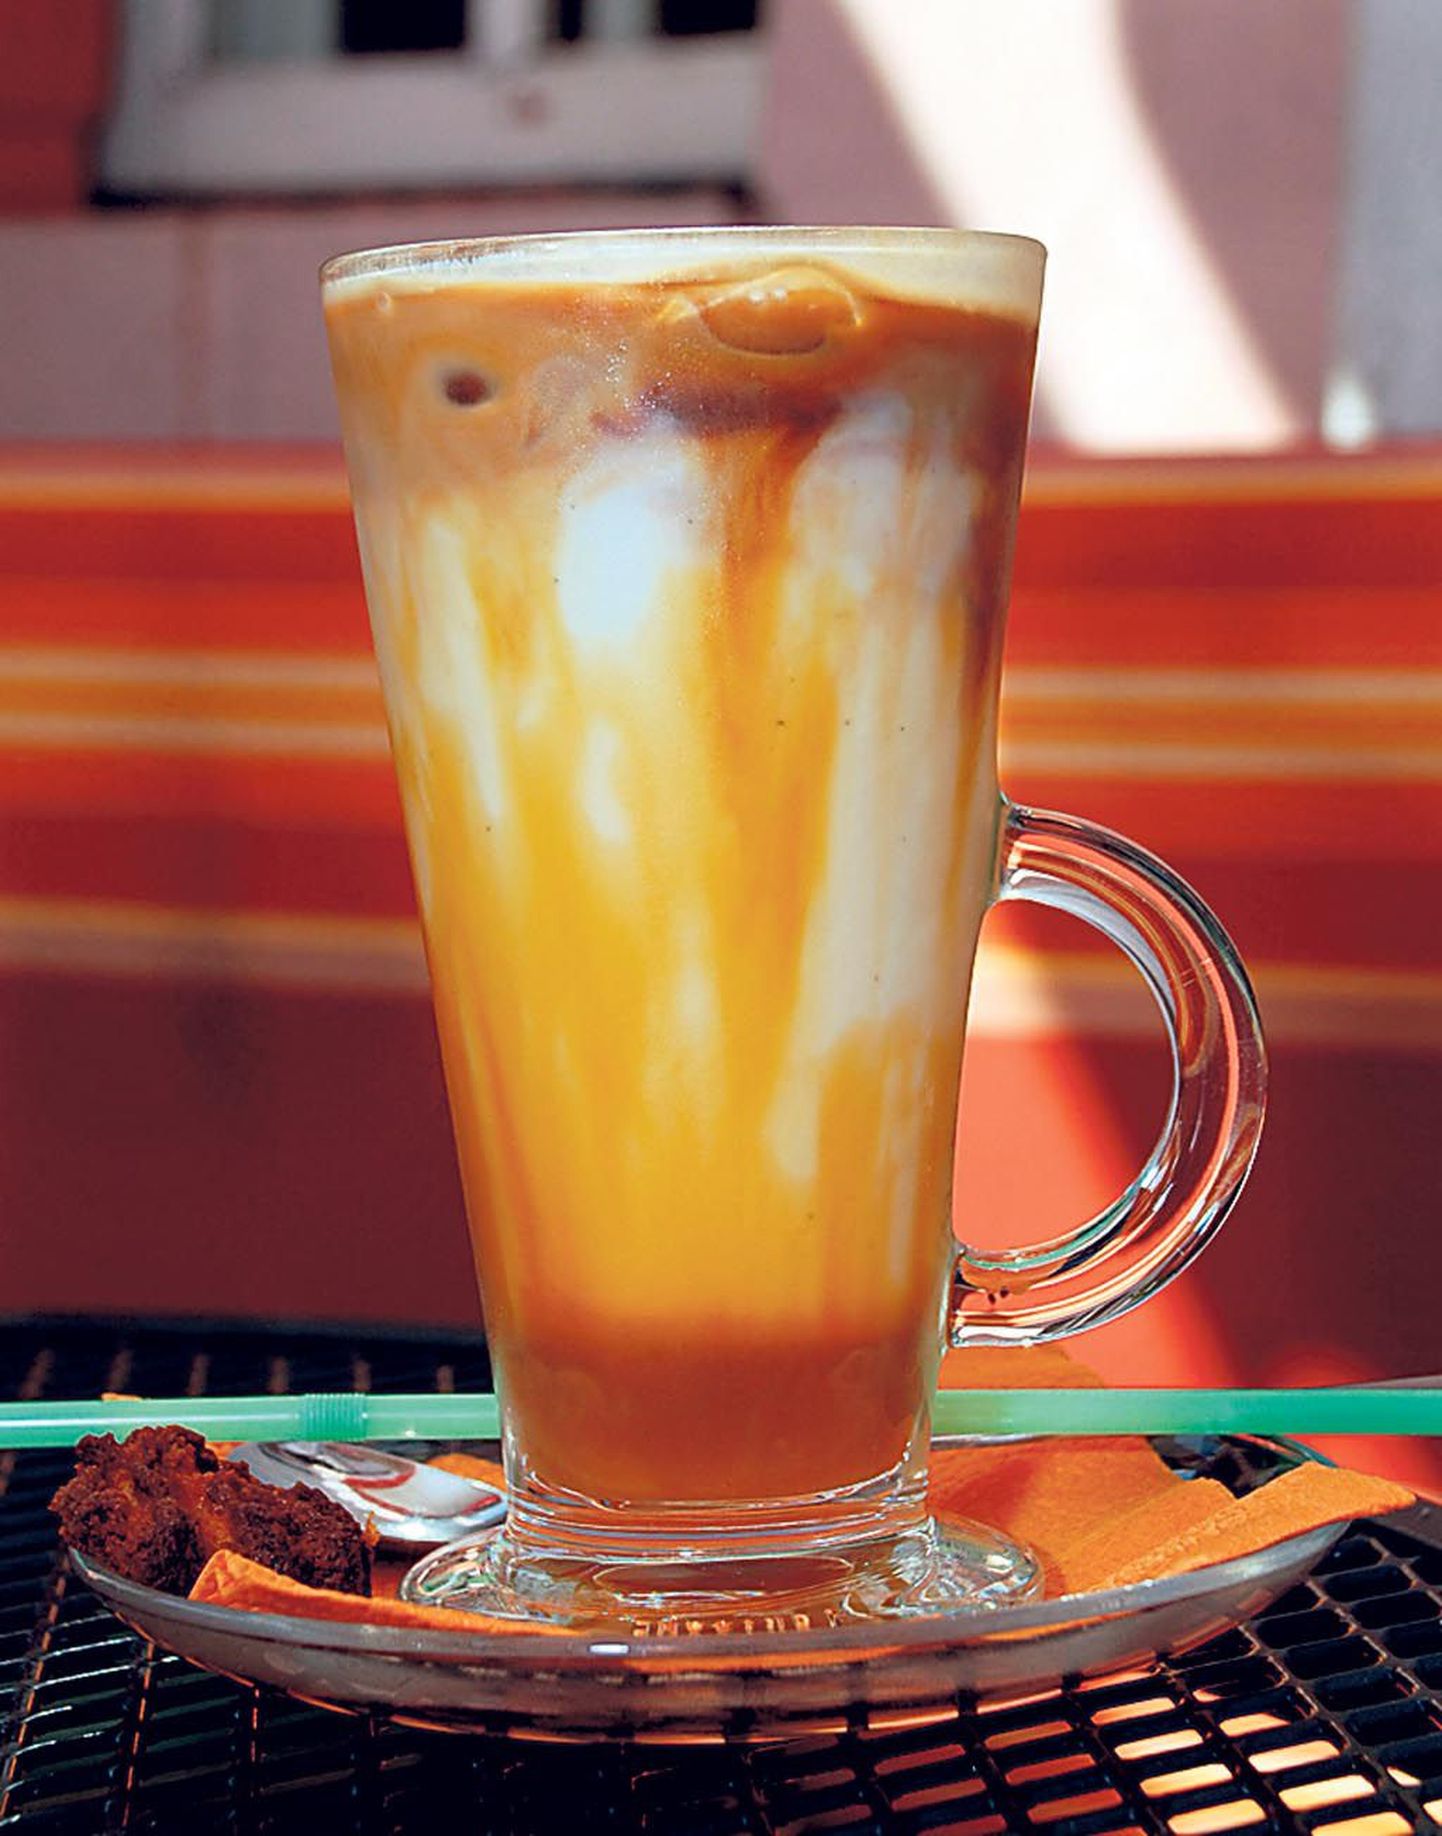 Piccadilly teeb jääkohvi nii: kuus jääkuubikut, kallatakse karamellisiirupiga üle, lisatakse ohtralt külma piima ja sorts kanget kohvi.